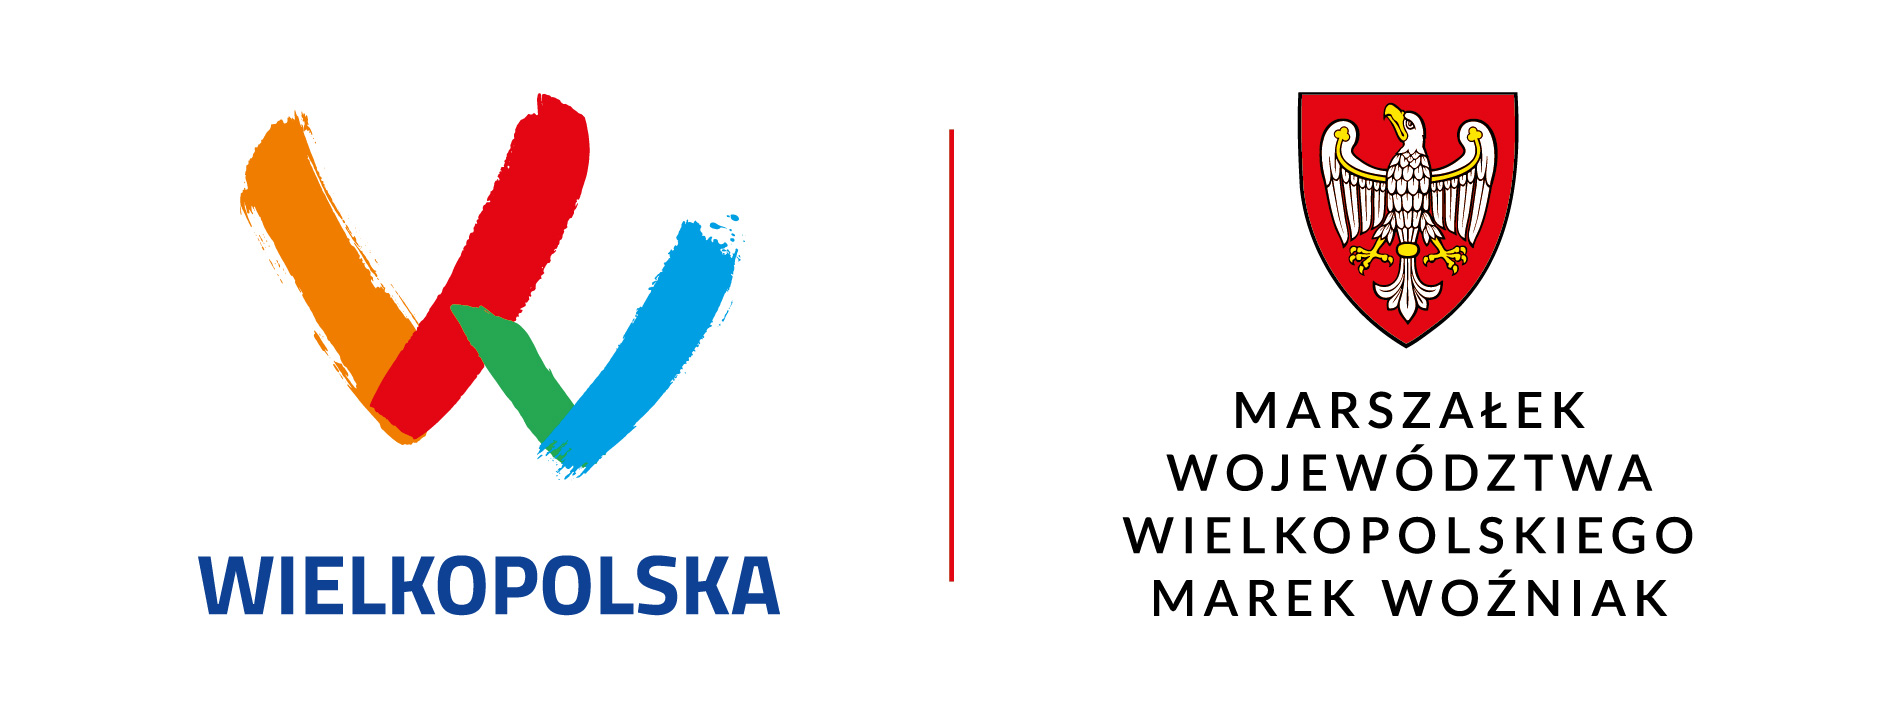 logotyp Wojewodztwa Wielkopolskiego i herb Marszałka Województwa Wielkopolskiego Marka Woźniaka